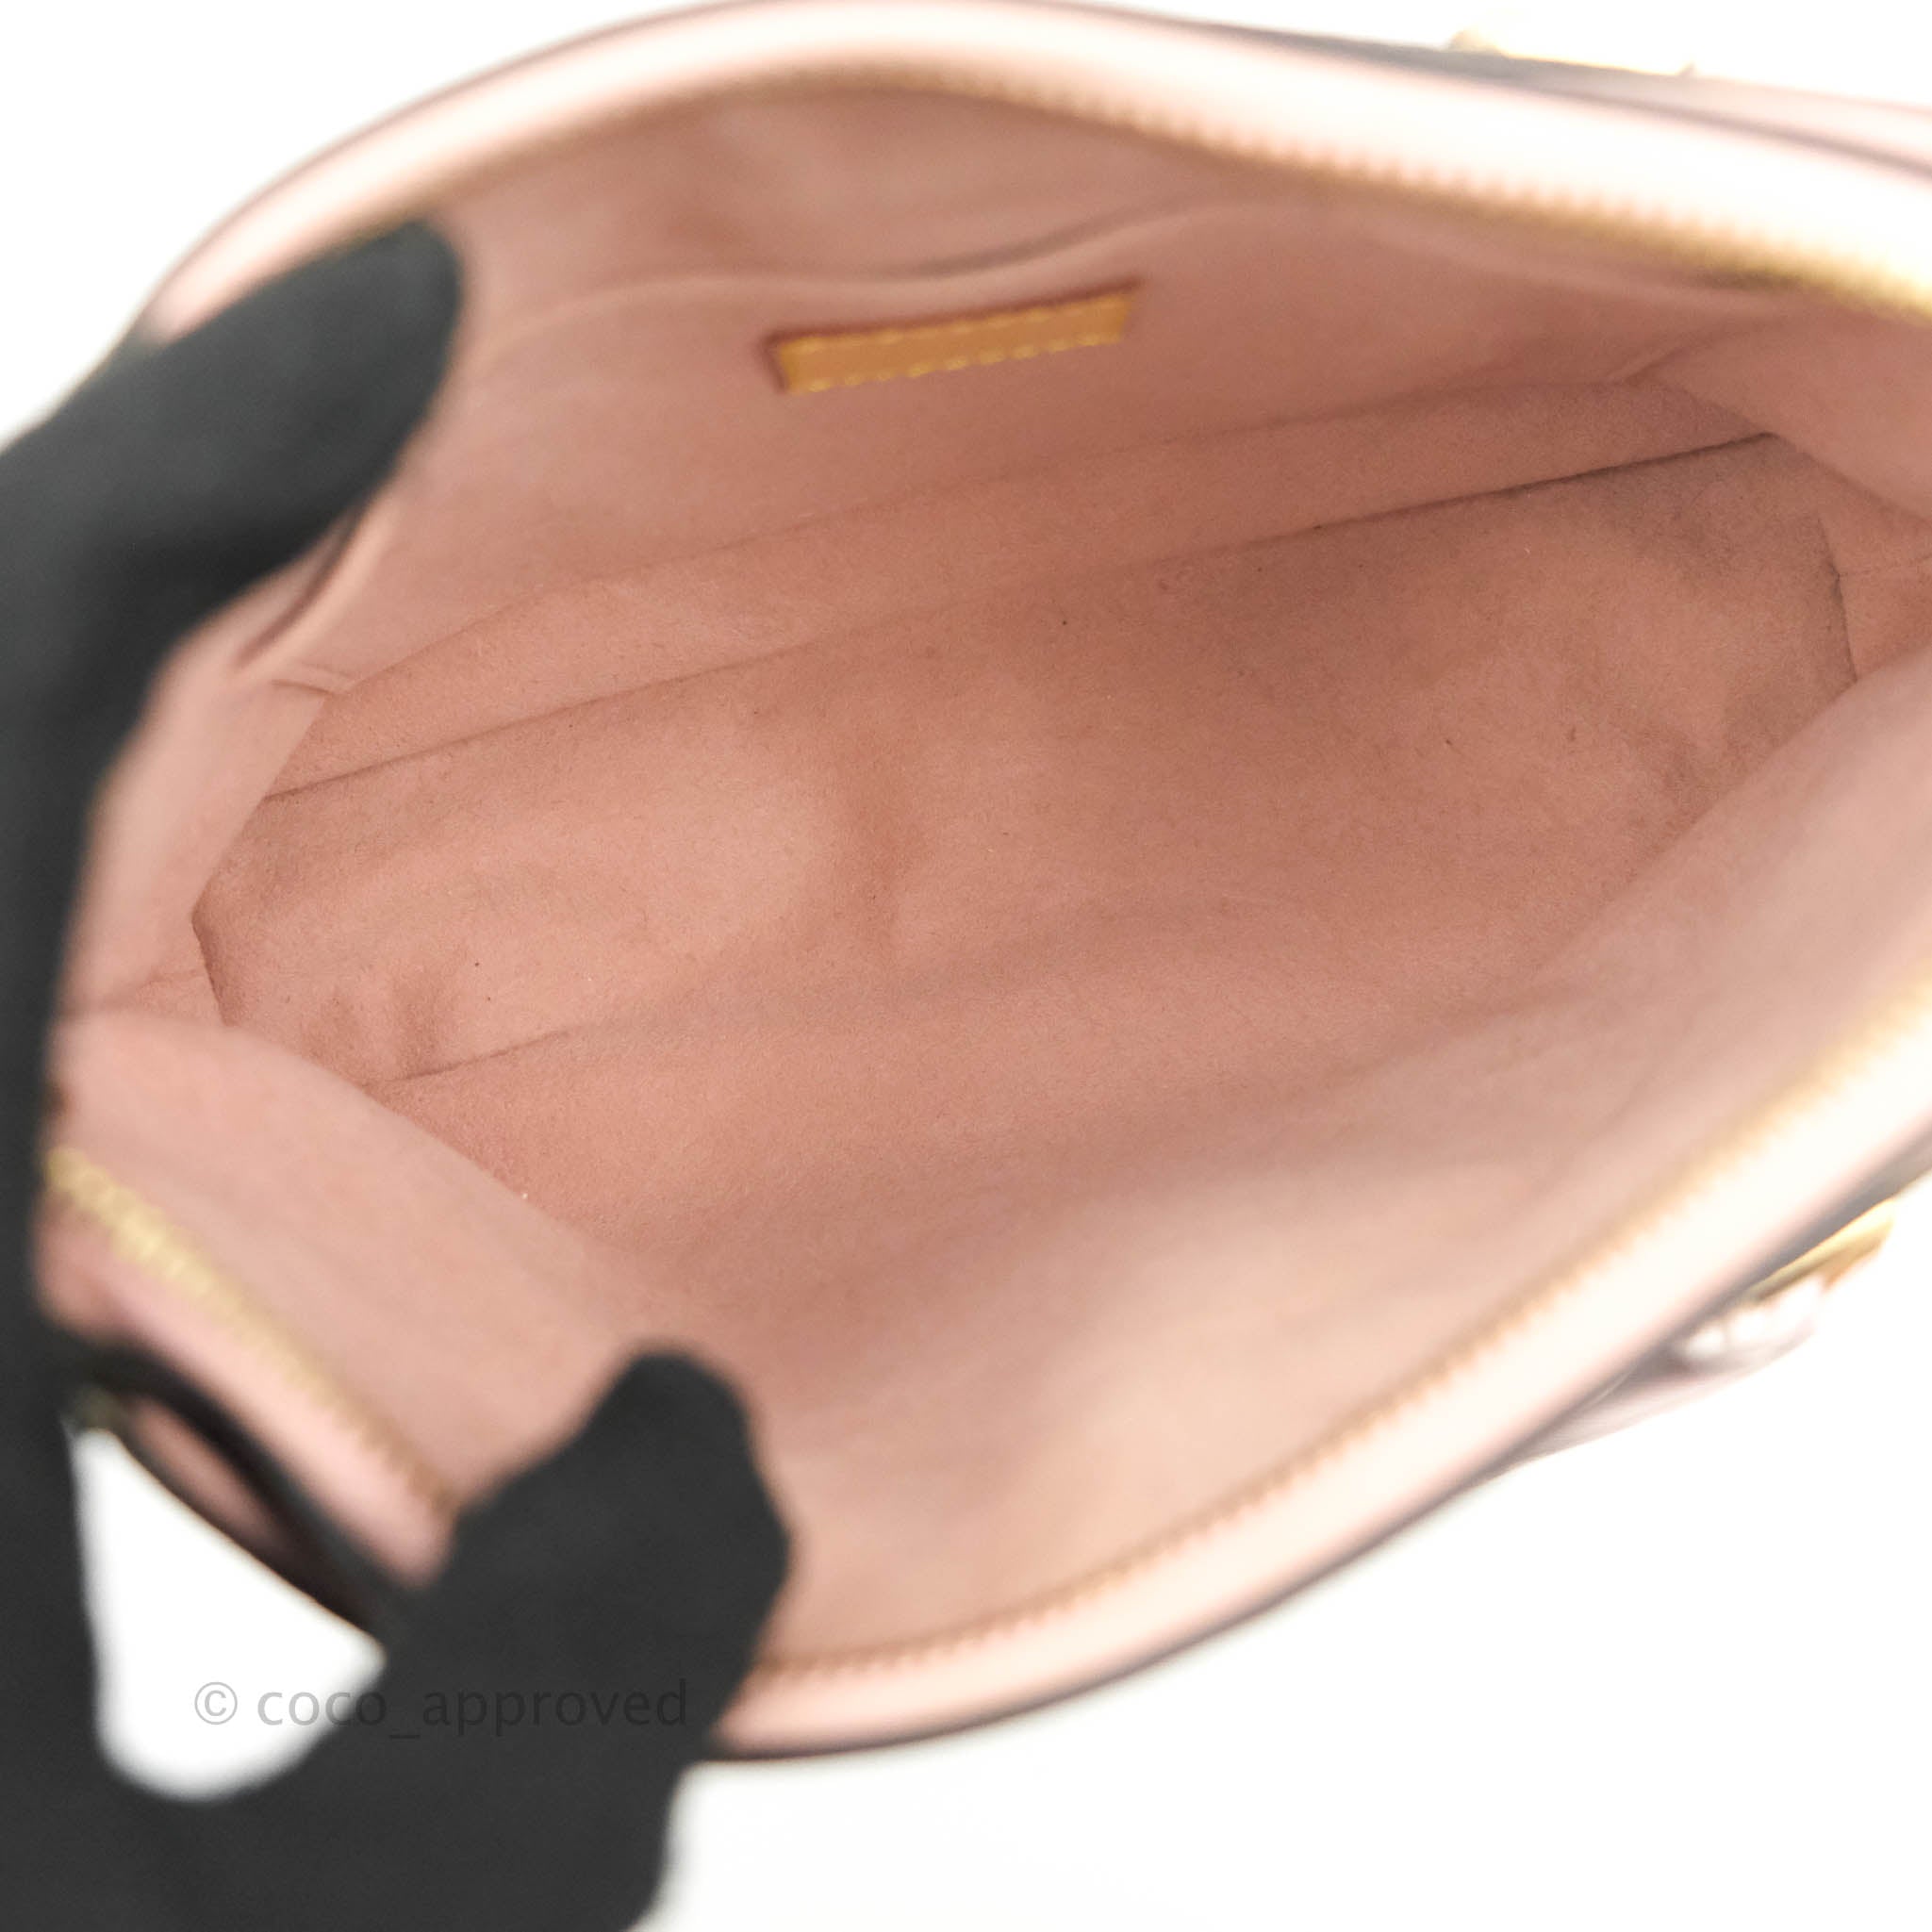 Louis Vuitton Pallas Shoulder bag 359274